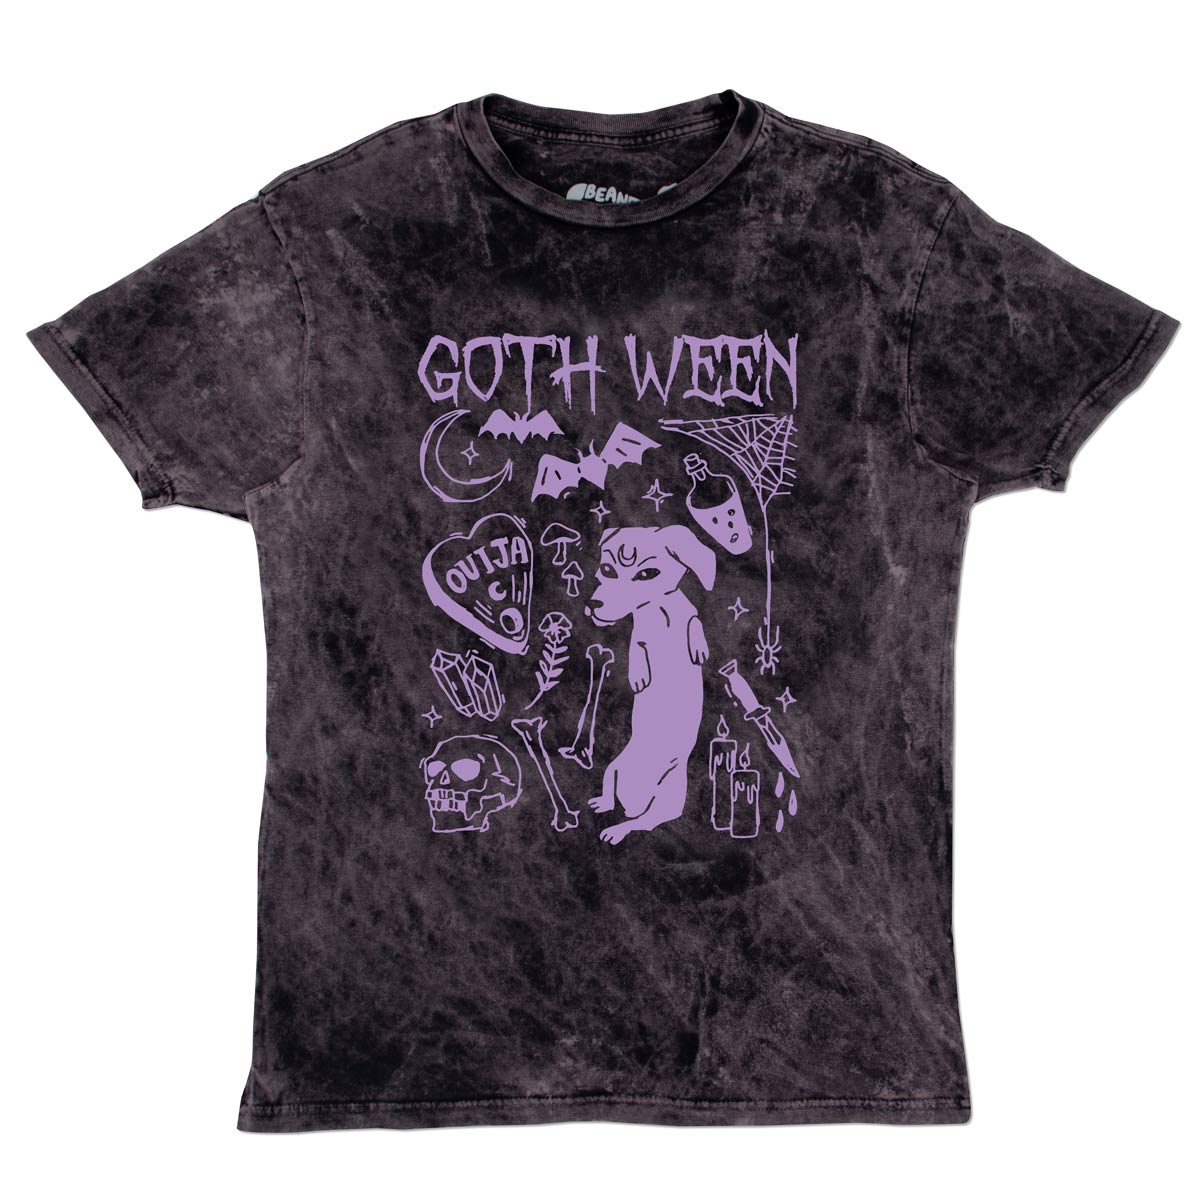 goth ween unisex tee | black mineral wash - bean goods